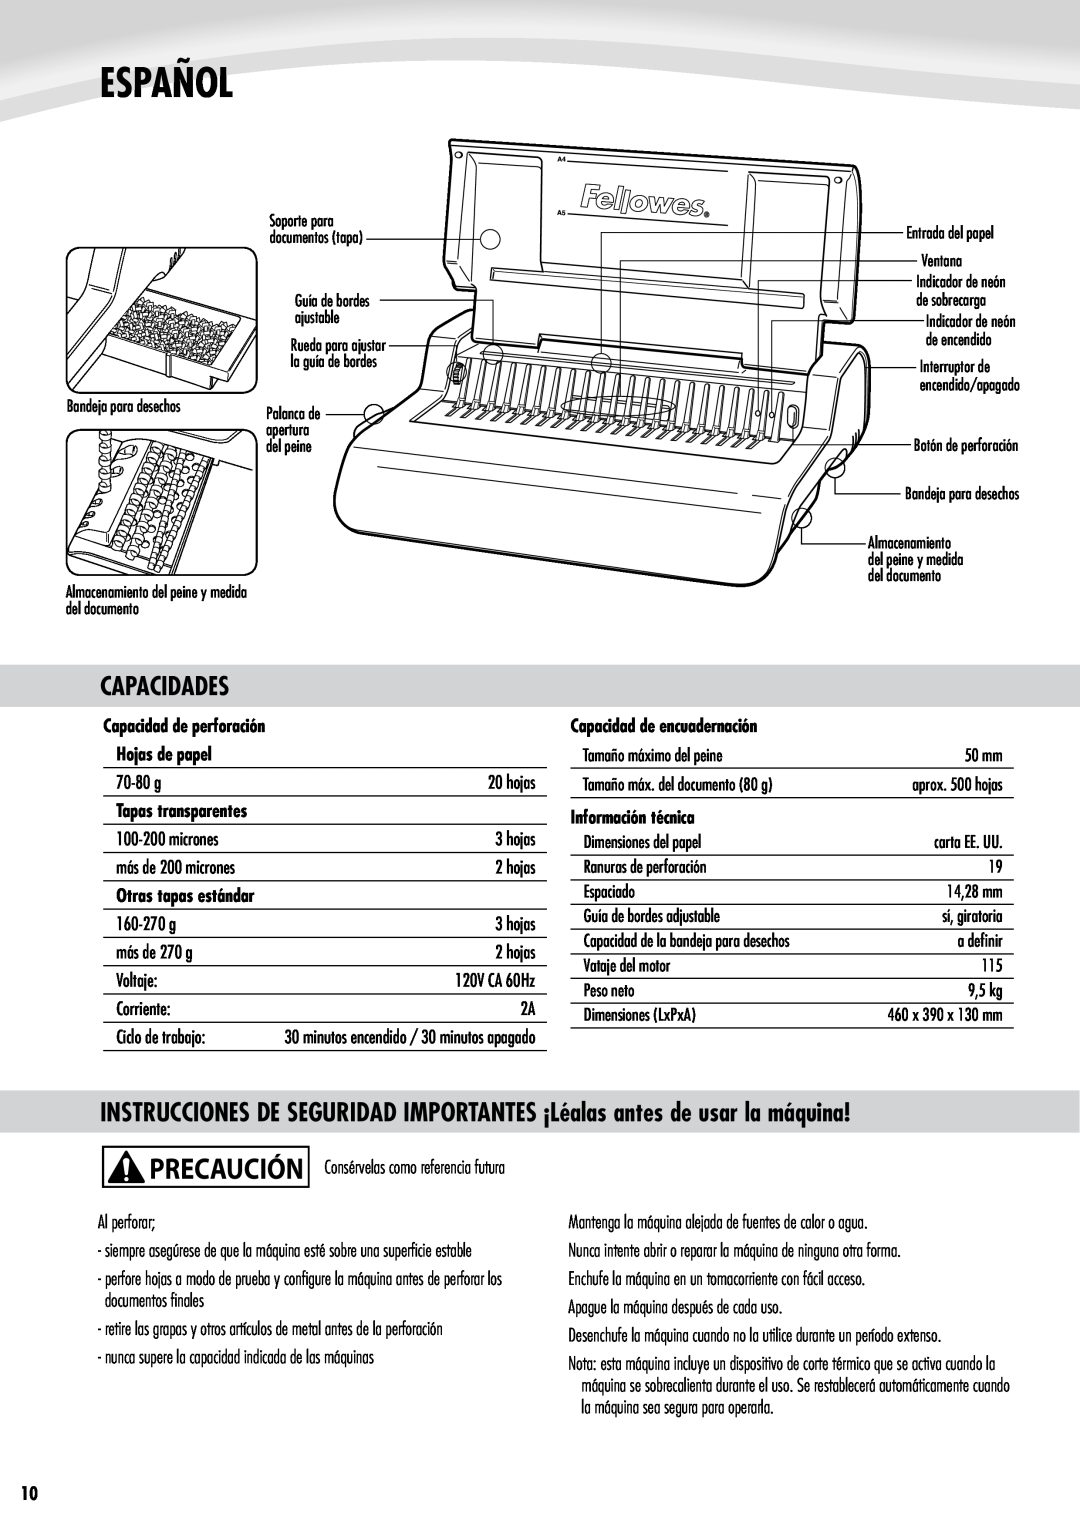 Fellowes e500 manual Español, Capacidades, Capacidad de perforación Hojas de papel, Capacidad de encuadernación 